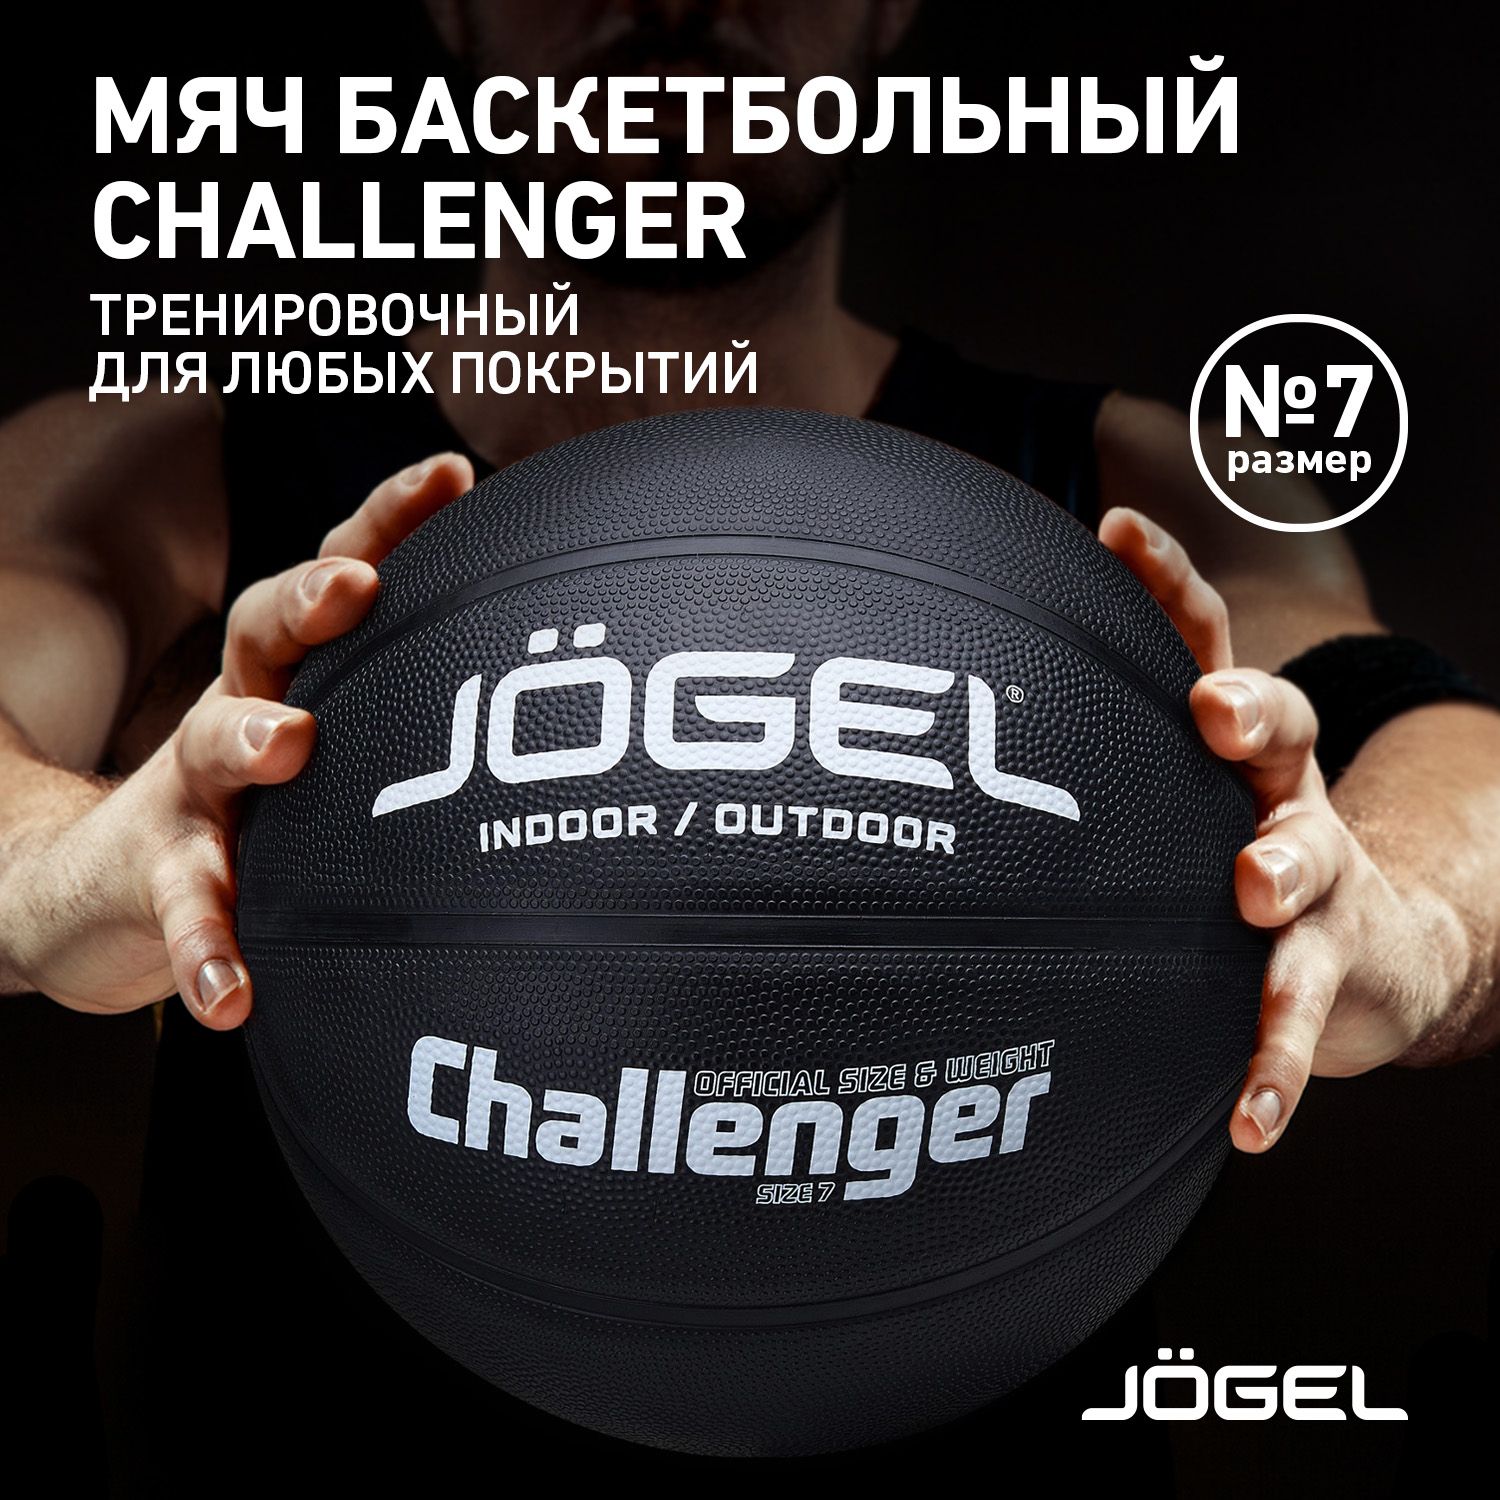 БаскетбольныймячJogelChallenger,цветчерный,размер7